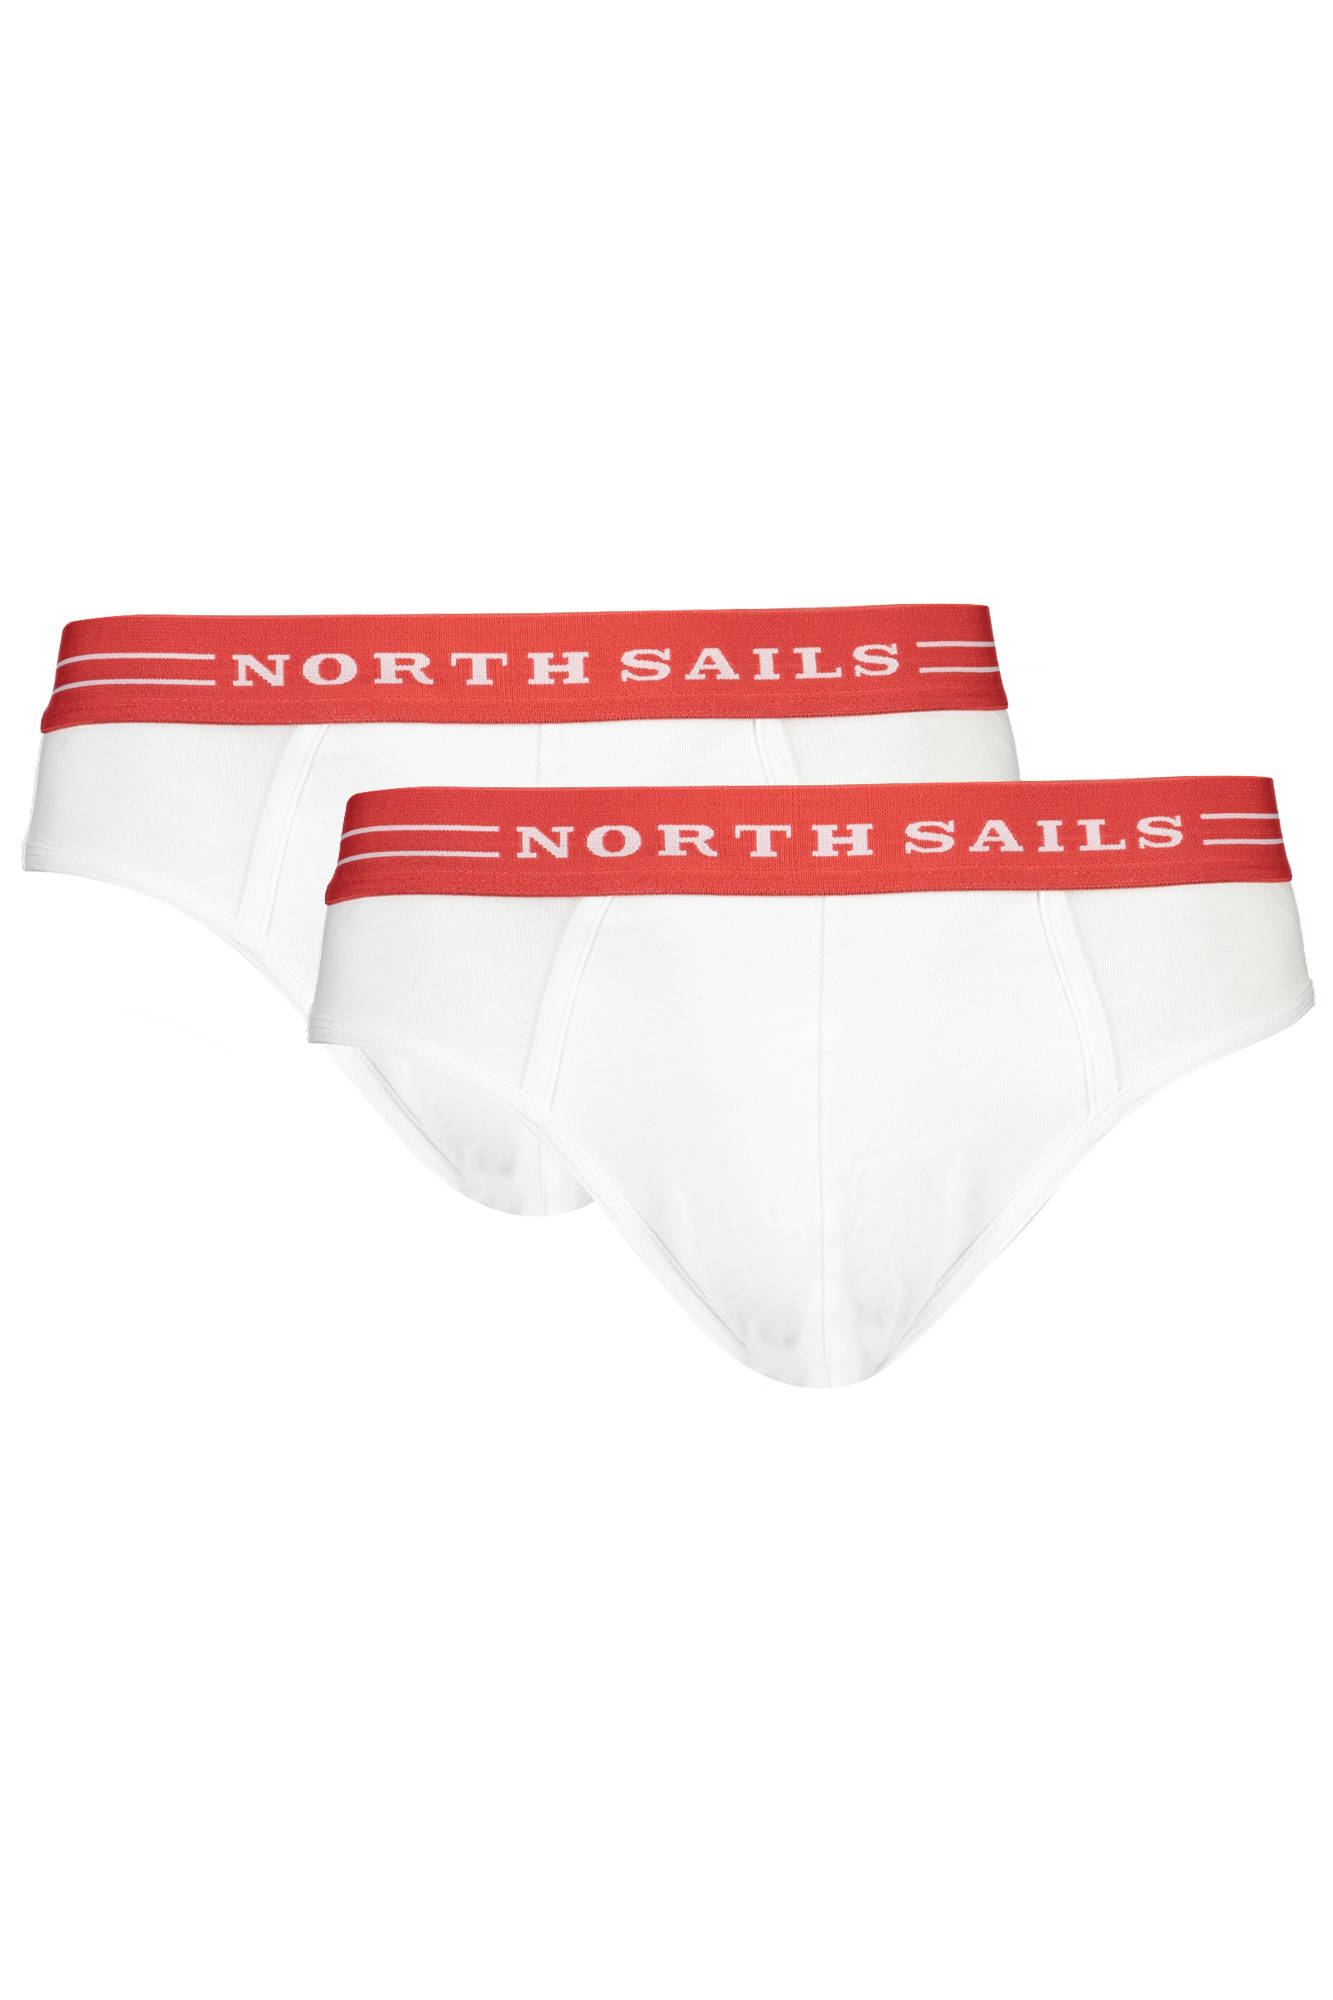 Spodní prádlo NORTH SAILS slipy BIANCO